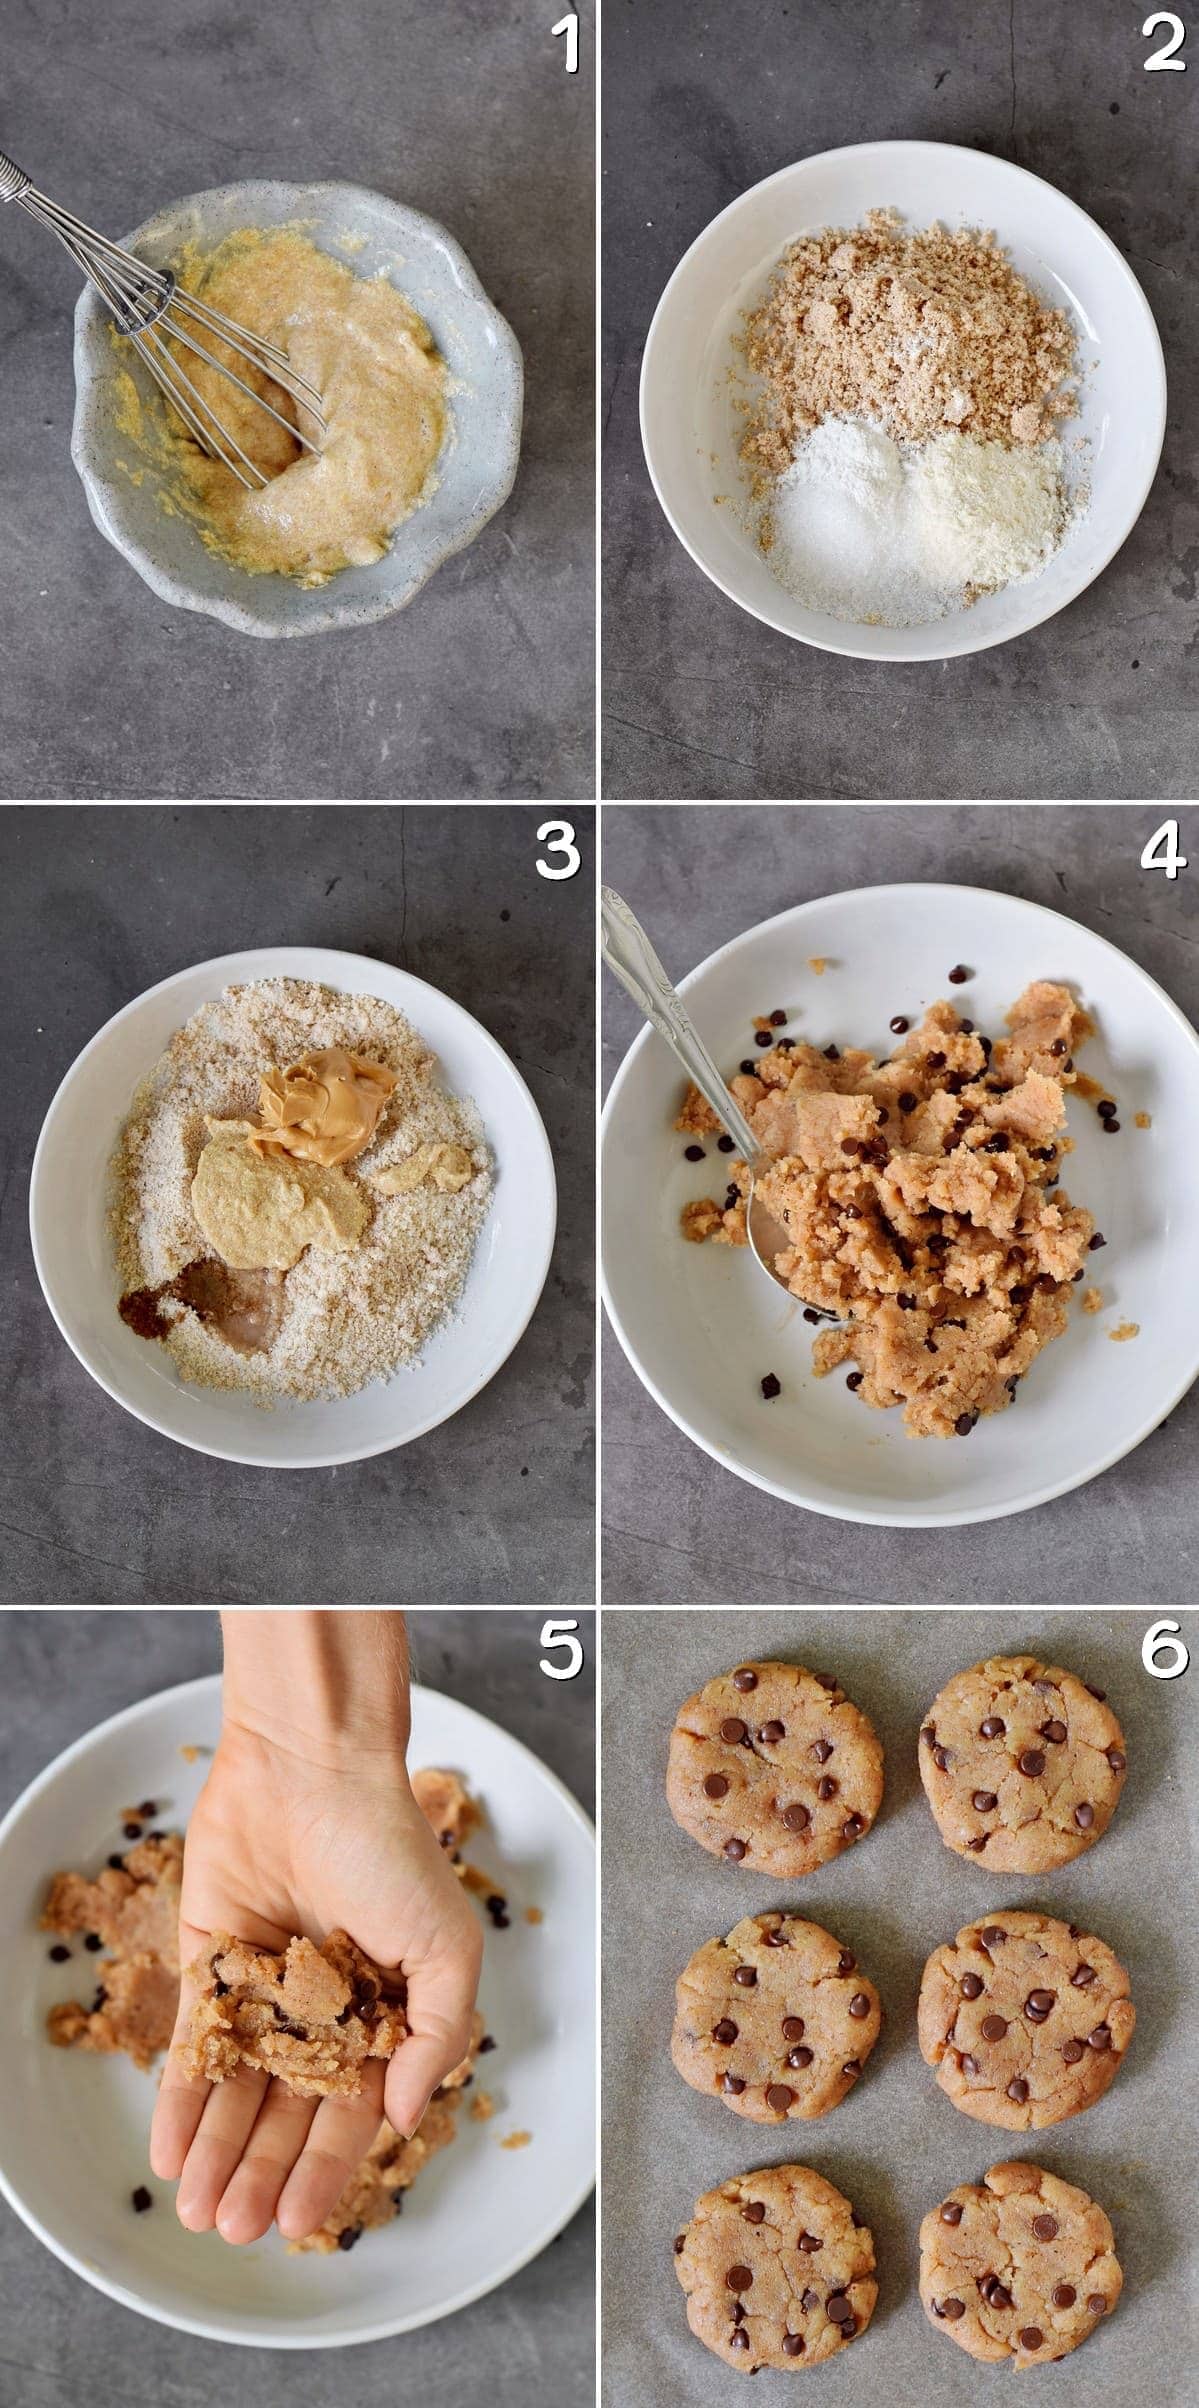 6 Schritt-Für-Schritt-Fotos von der Herstellung von veganen Keksen mit Schokodrops